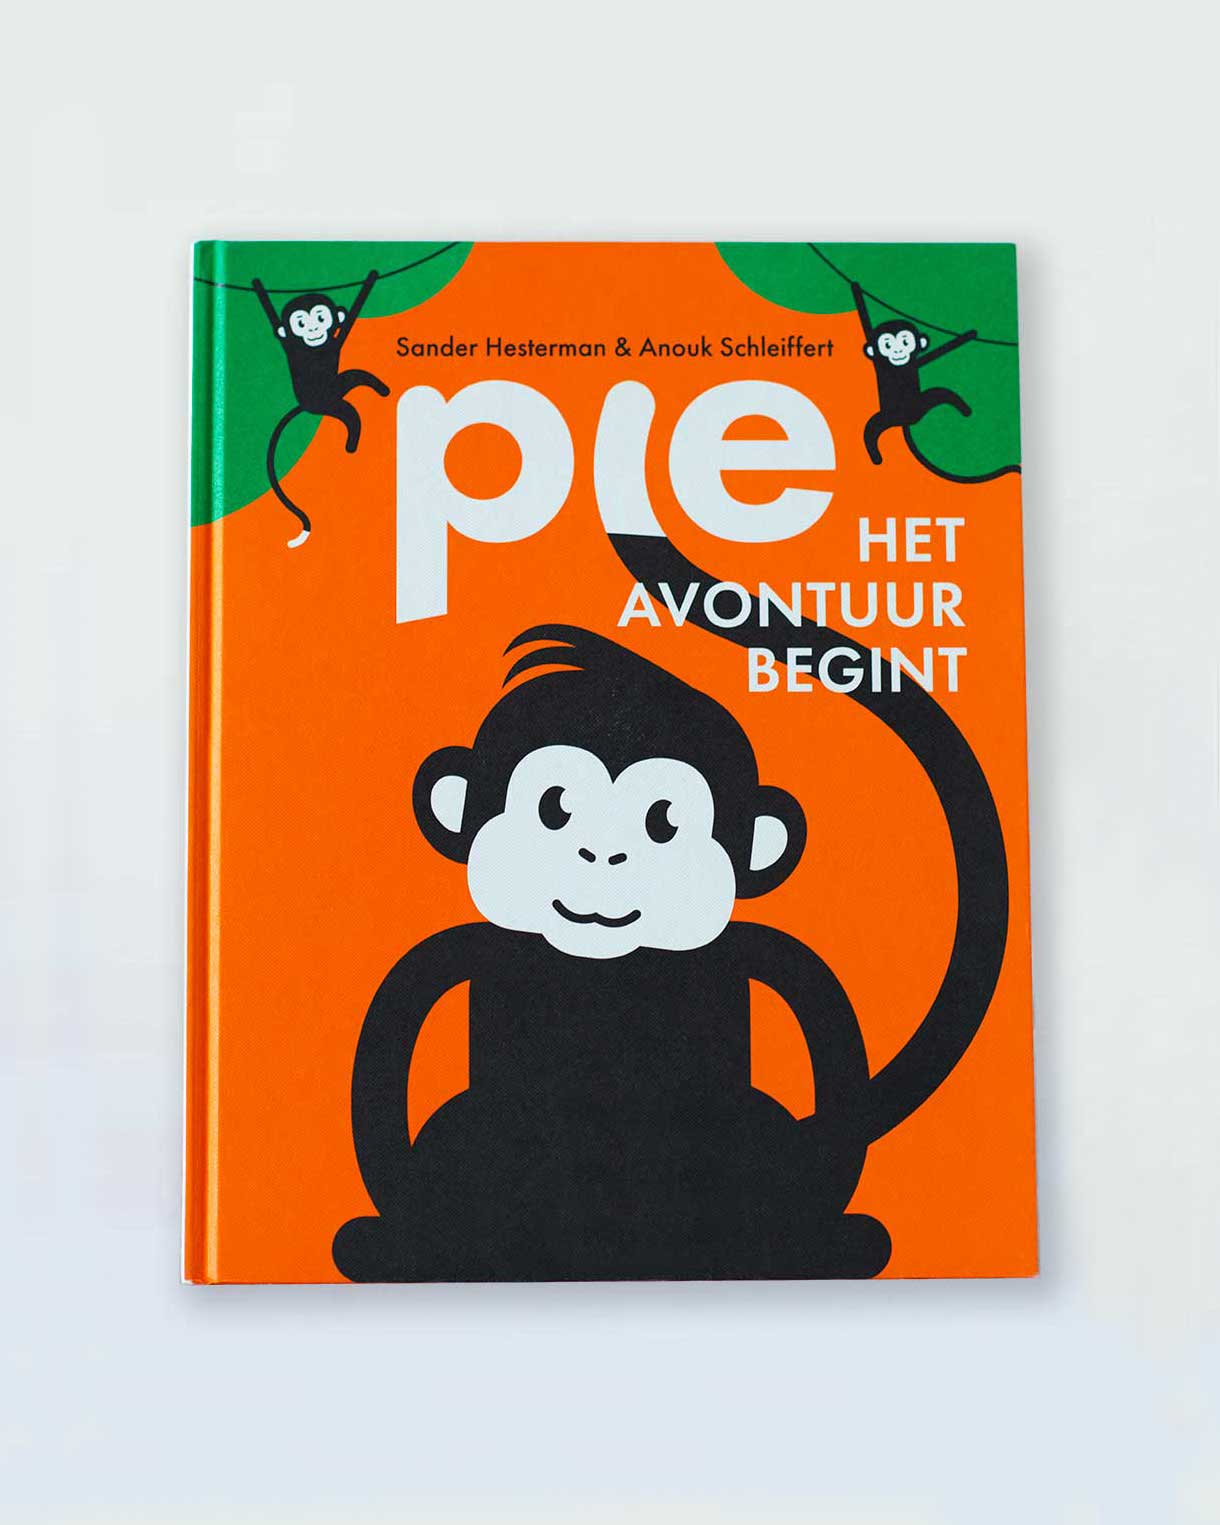 Aapje Pie Prentenboek Pie het avontuur begint, duurzaam, lokaal, contrastrijke illustraties en primaire en secundaire kleuren en interactief